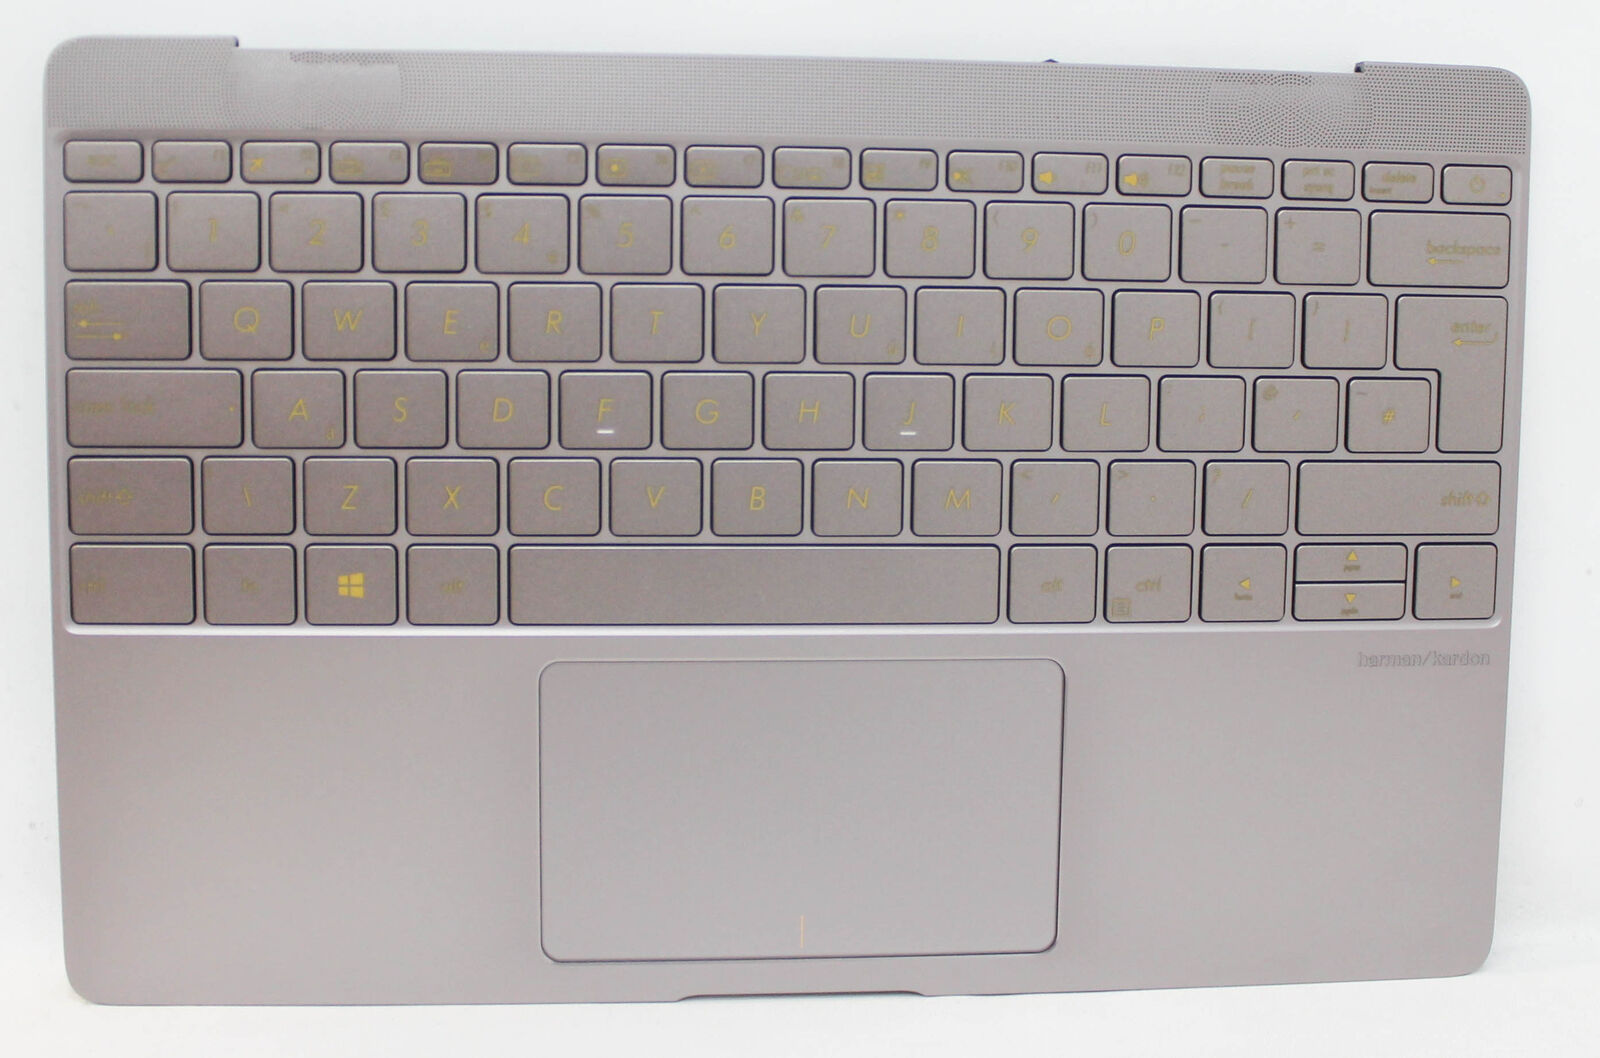 90NB0CZ1-R31UK1 Asus Palmrest Top Cover Keyboard (Uk-English) 